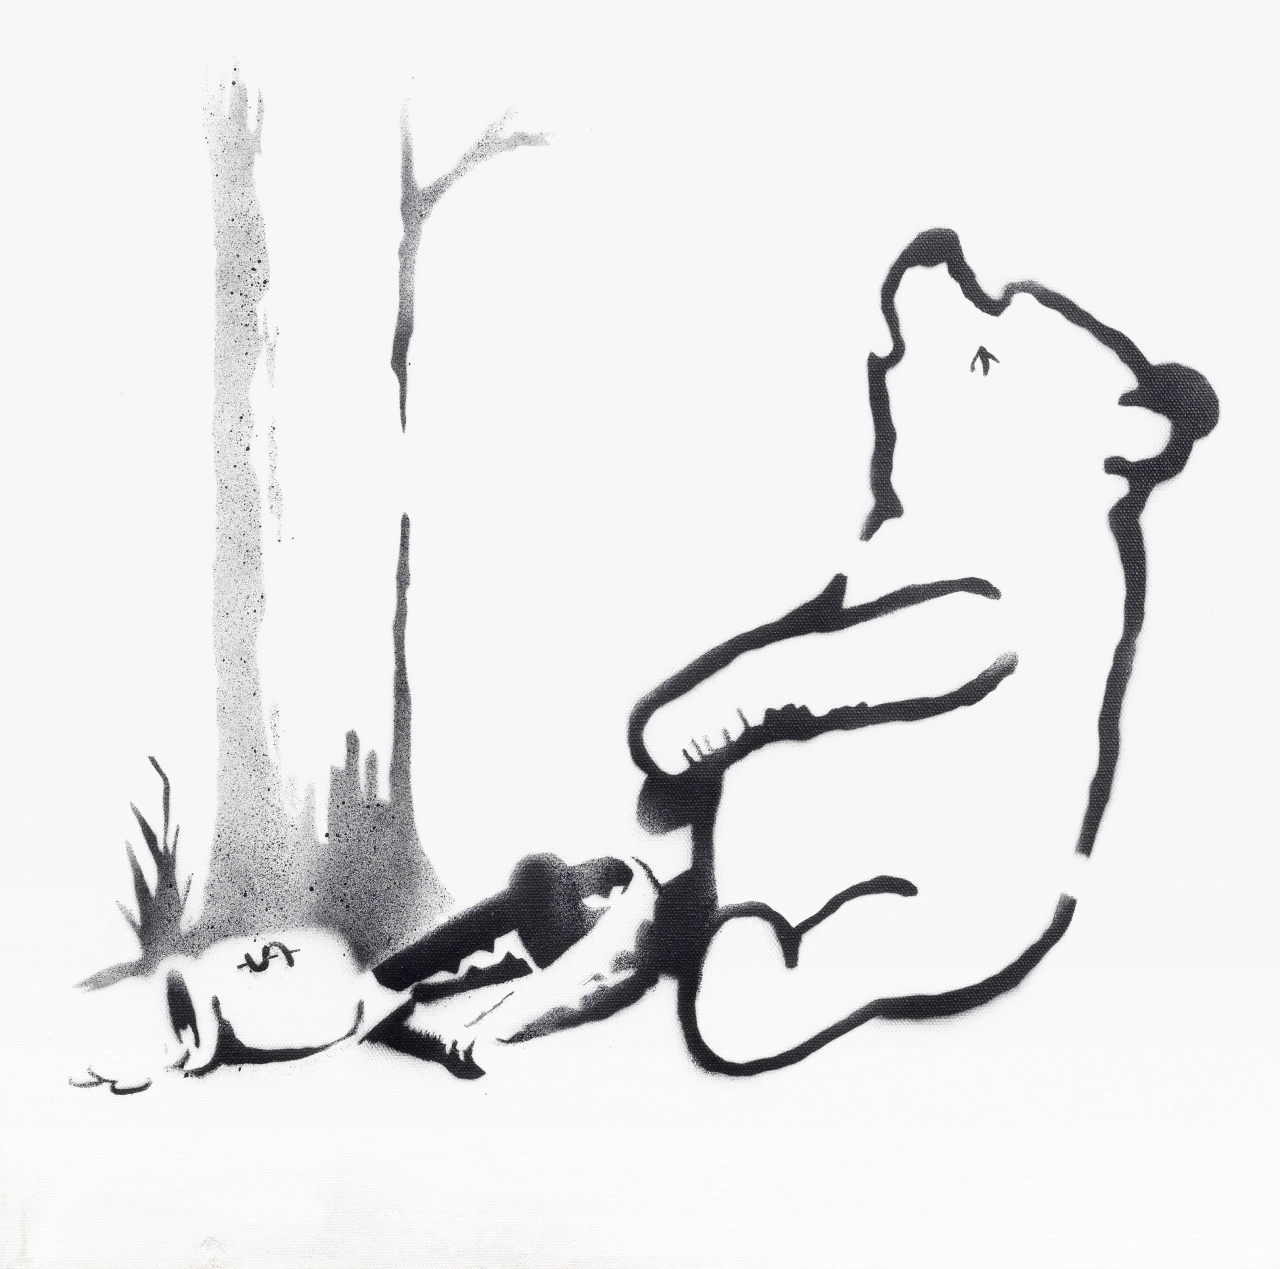 
GRAFFITIS. Pooh Bear. Exposición retrospectiva no autorizada del artista grafitero Banksy presenta 70 obras de arte en Londres. Banksy es el más famoso por su anárquica obras de graffitis de contenido social que aparecen en la arquitectura de la calle sin previo aviso en Gran Bretaña. (AP)